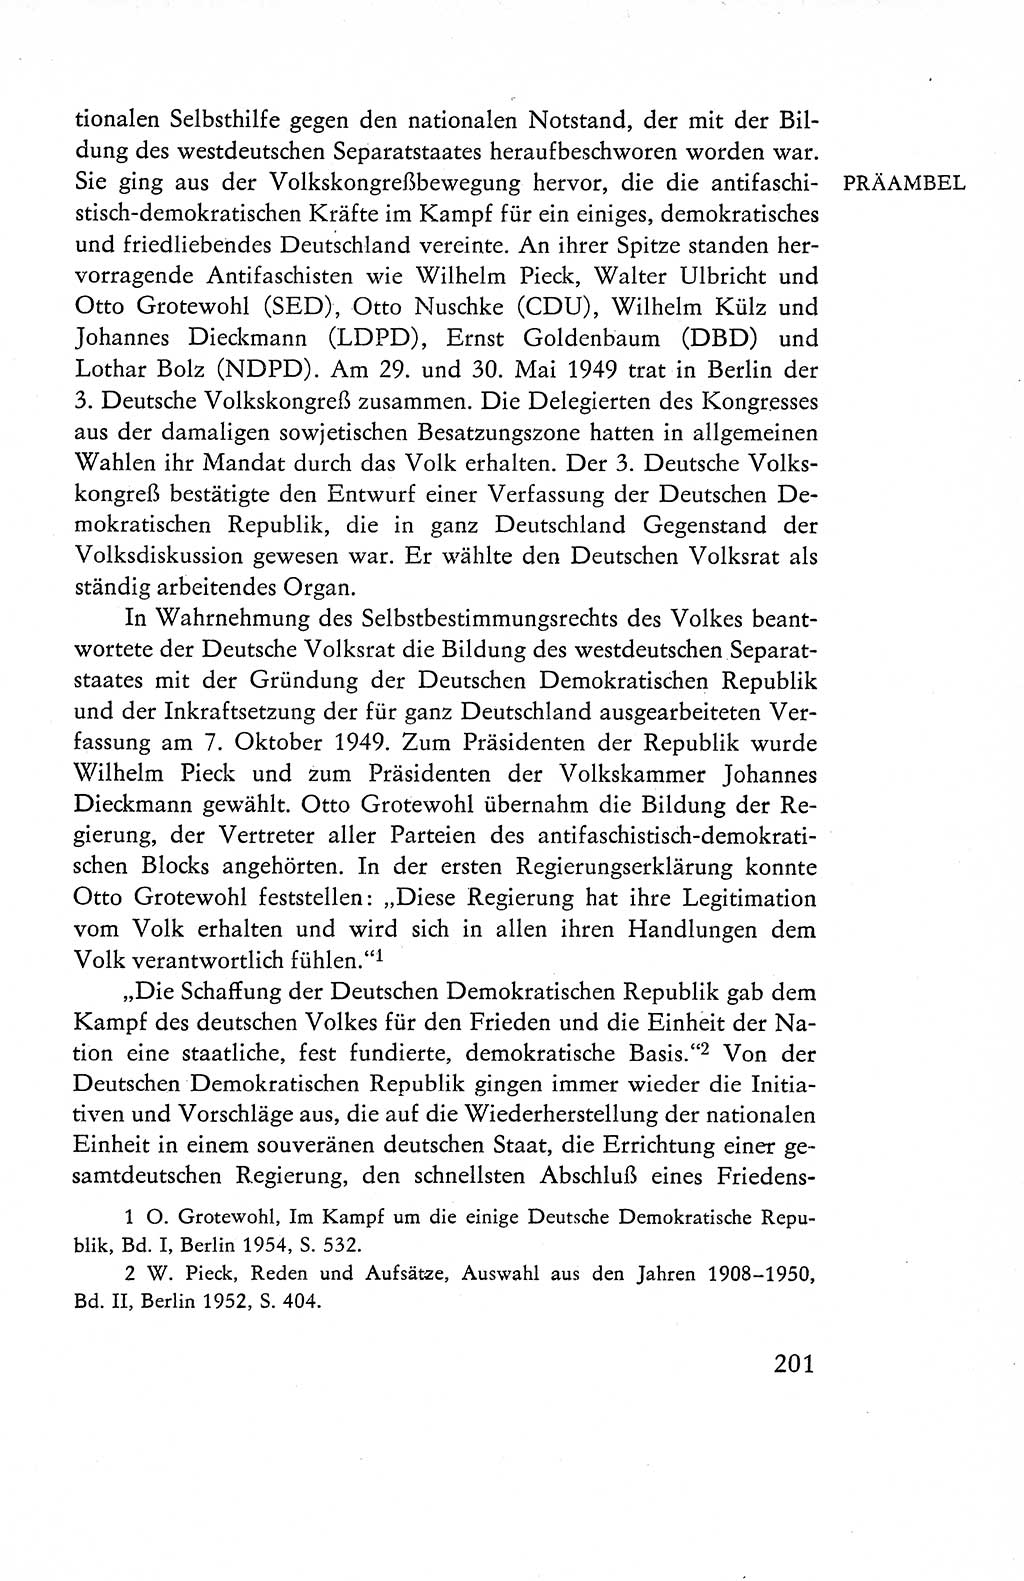 Verfassung der Deutschen Demokratischen Republik (DDR), Dokumente, Kommentar 1969, Band 1, Seite 201 (Verf. DDR Dok. Komm. 1969, Bd. 1, S. 201)